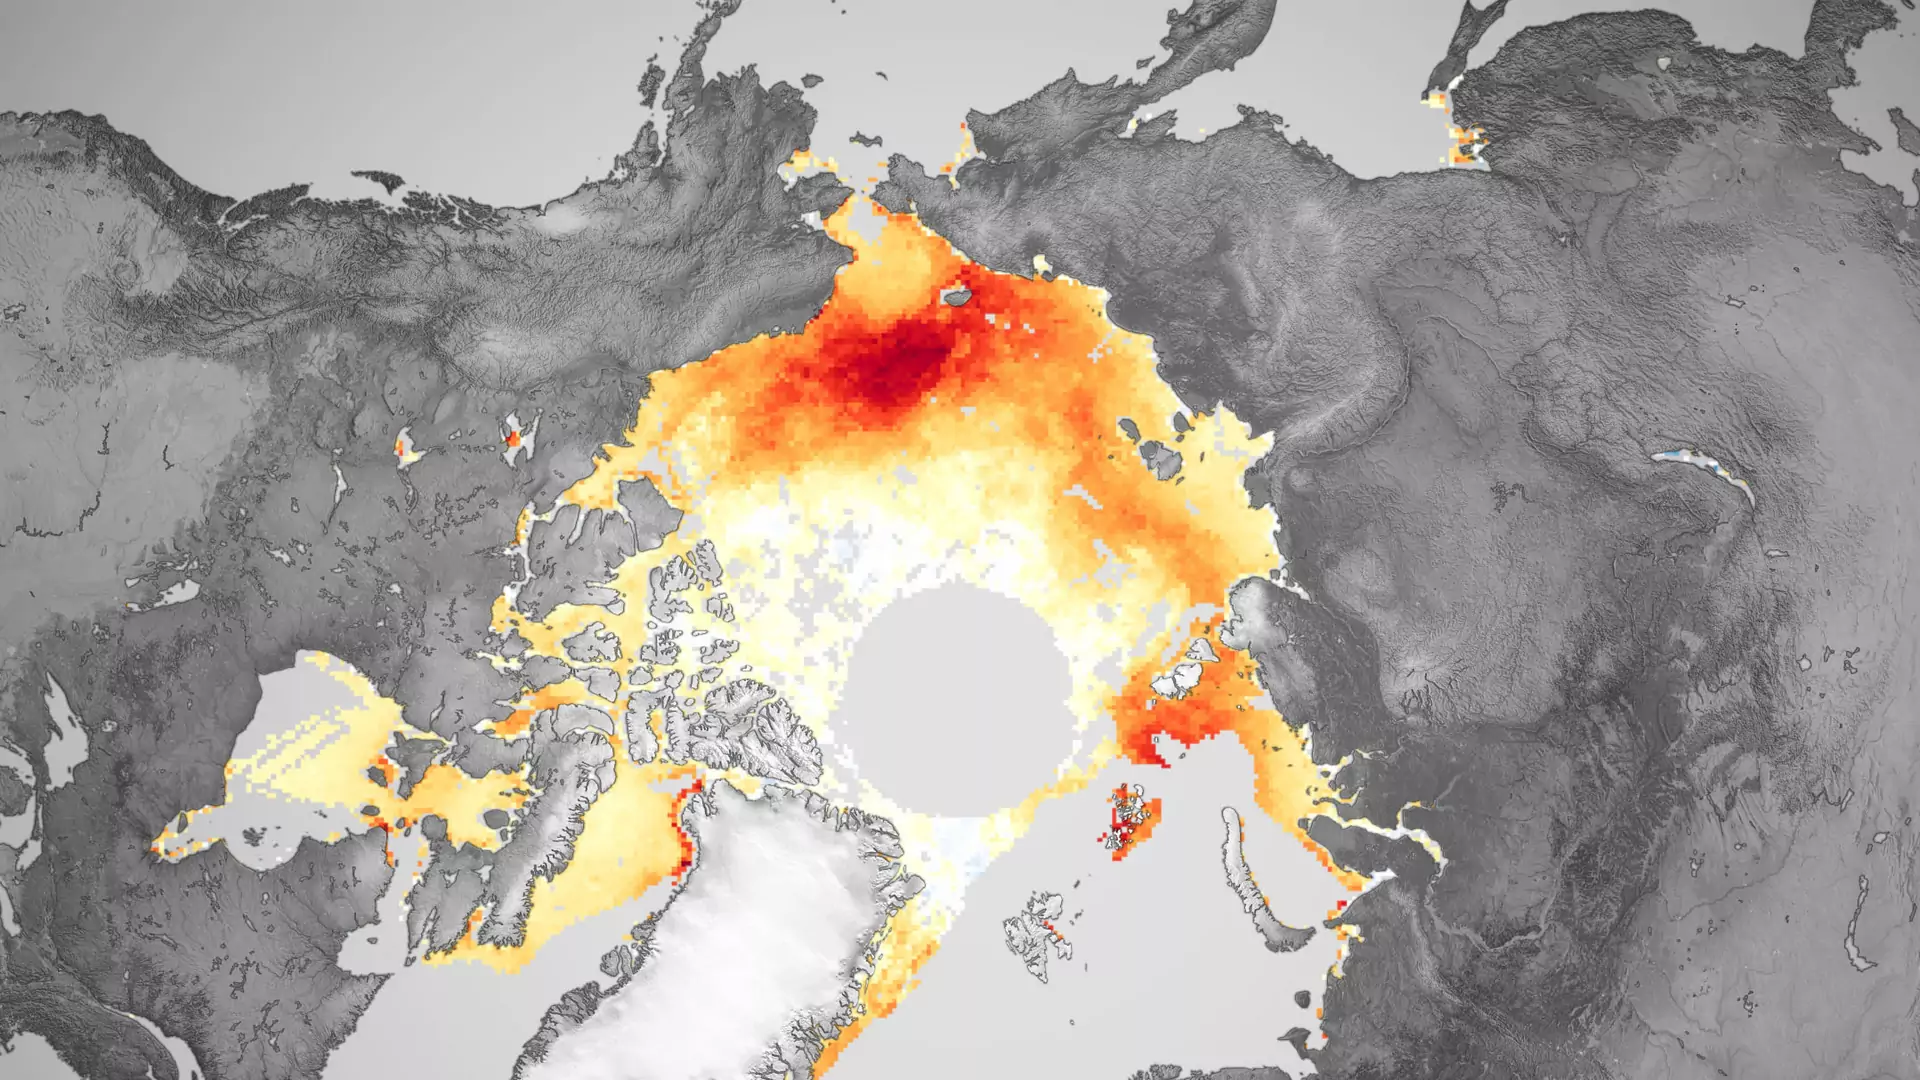 NASA podsumowuje 40 lat topnienia lodu. "Statki bez problemów docierają na biegun północny"